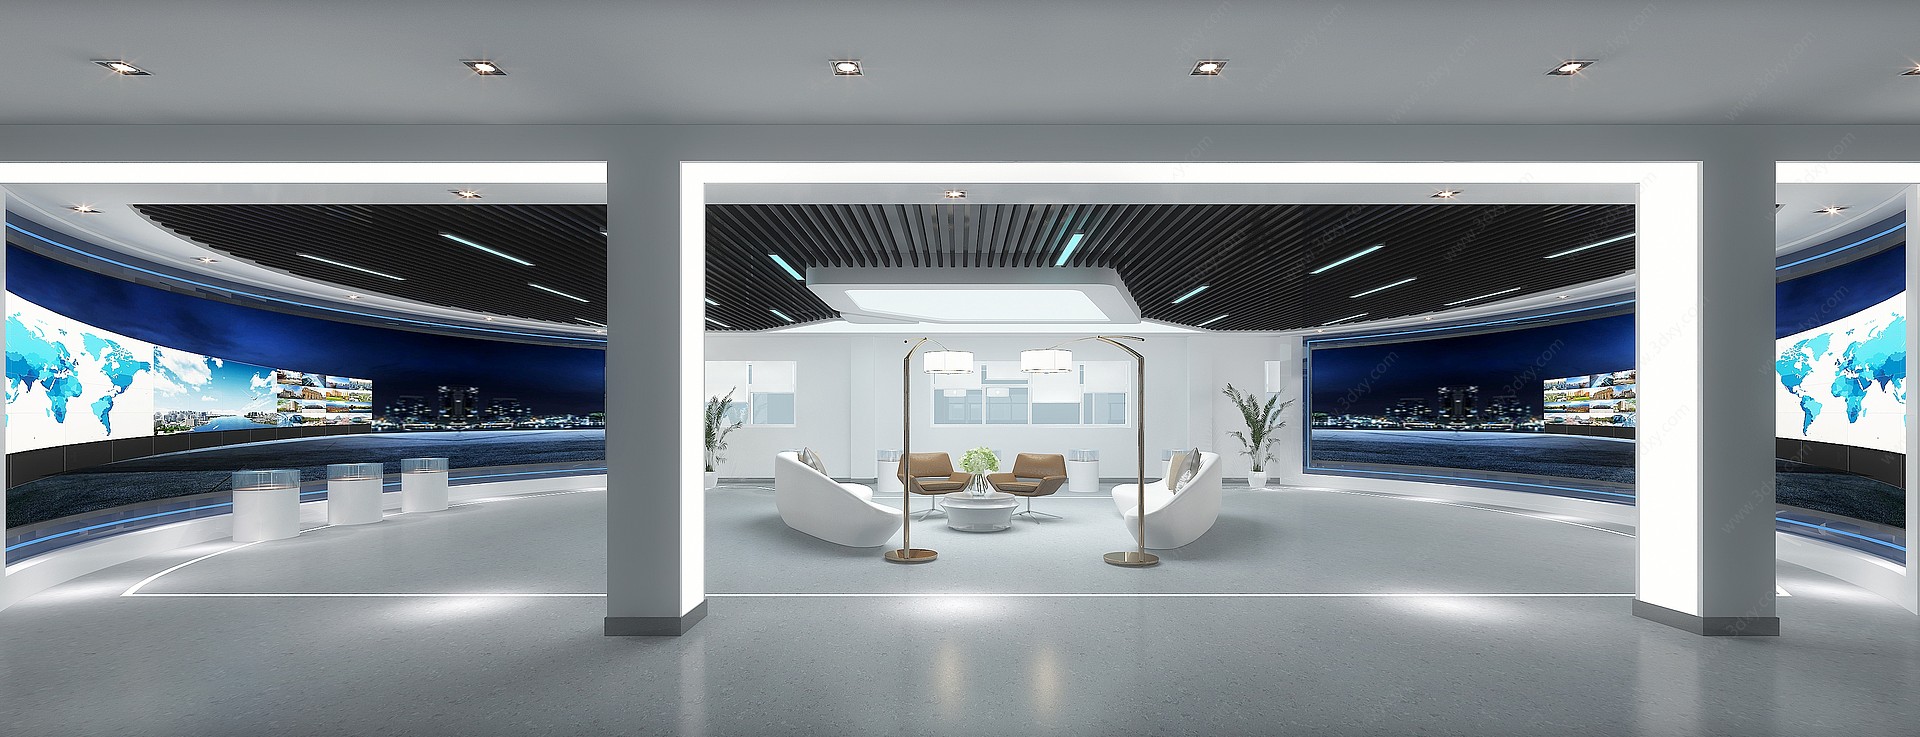 现代科技展厅大厅3D模型